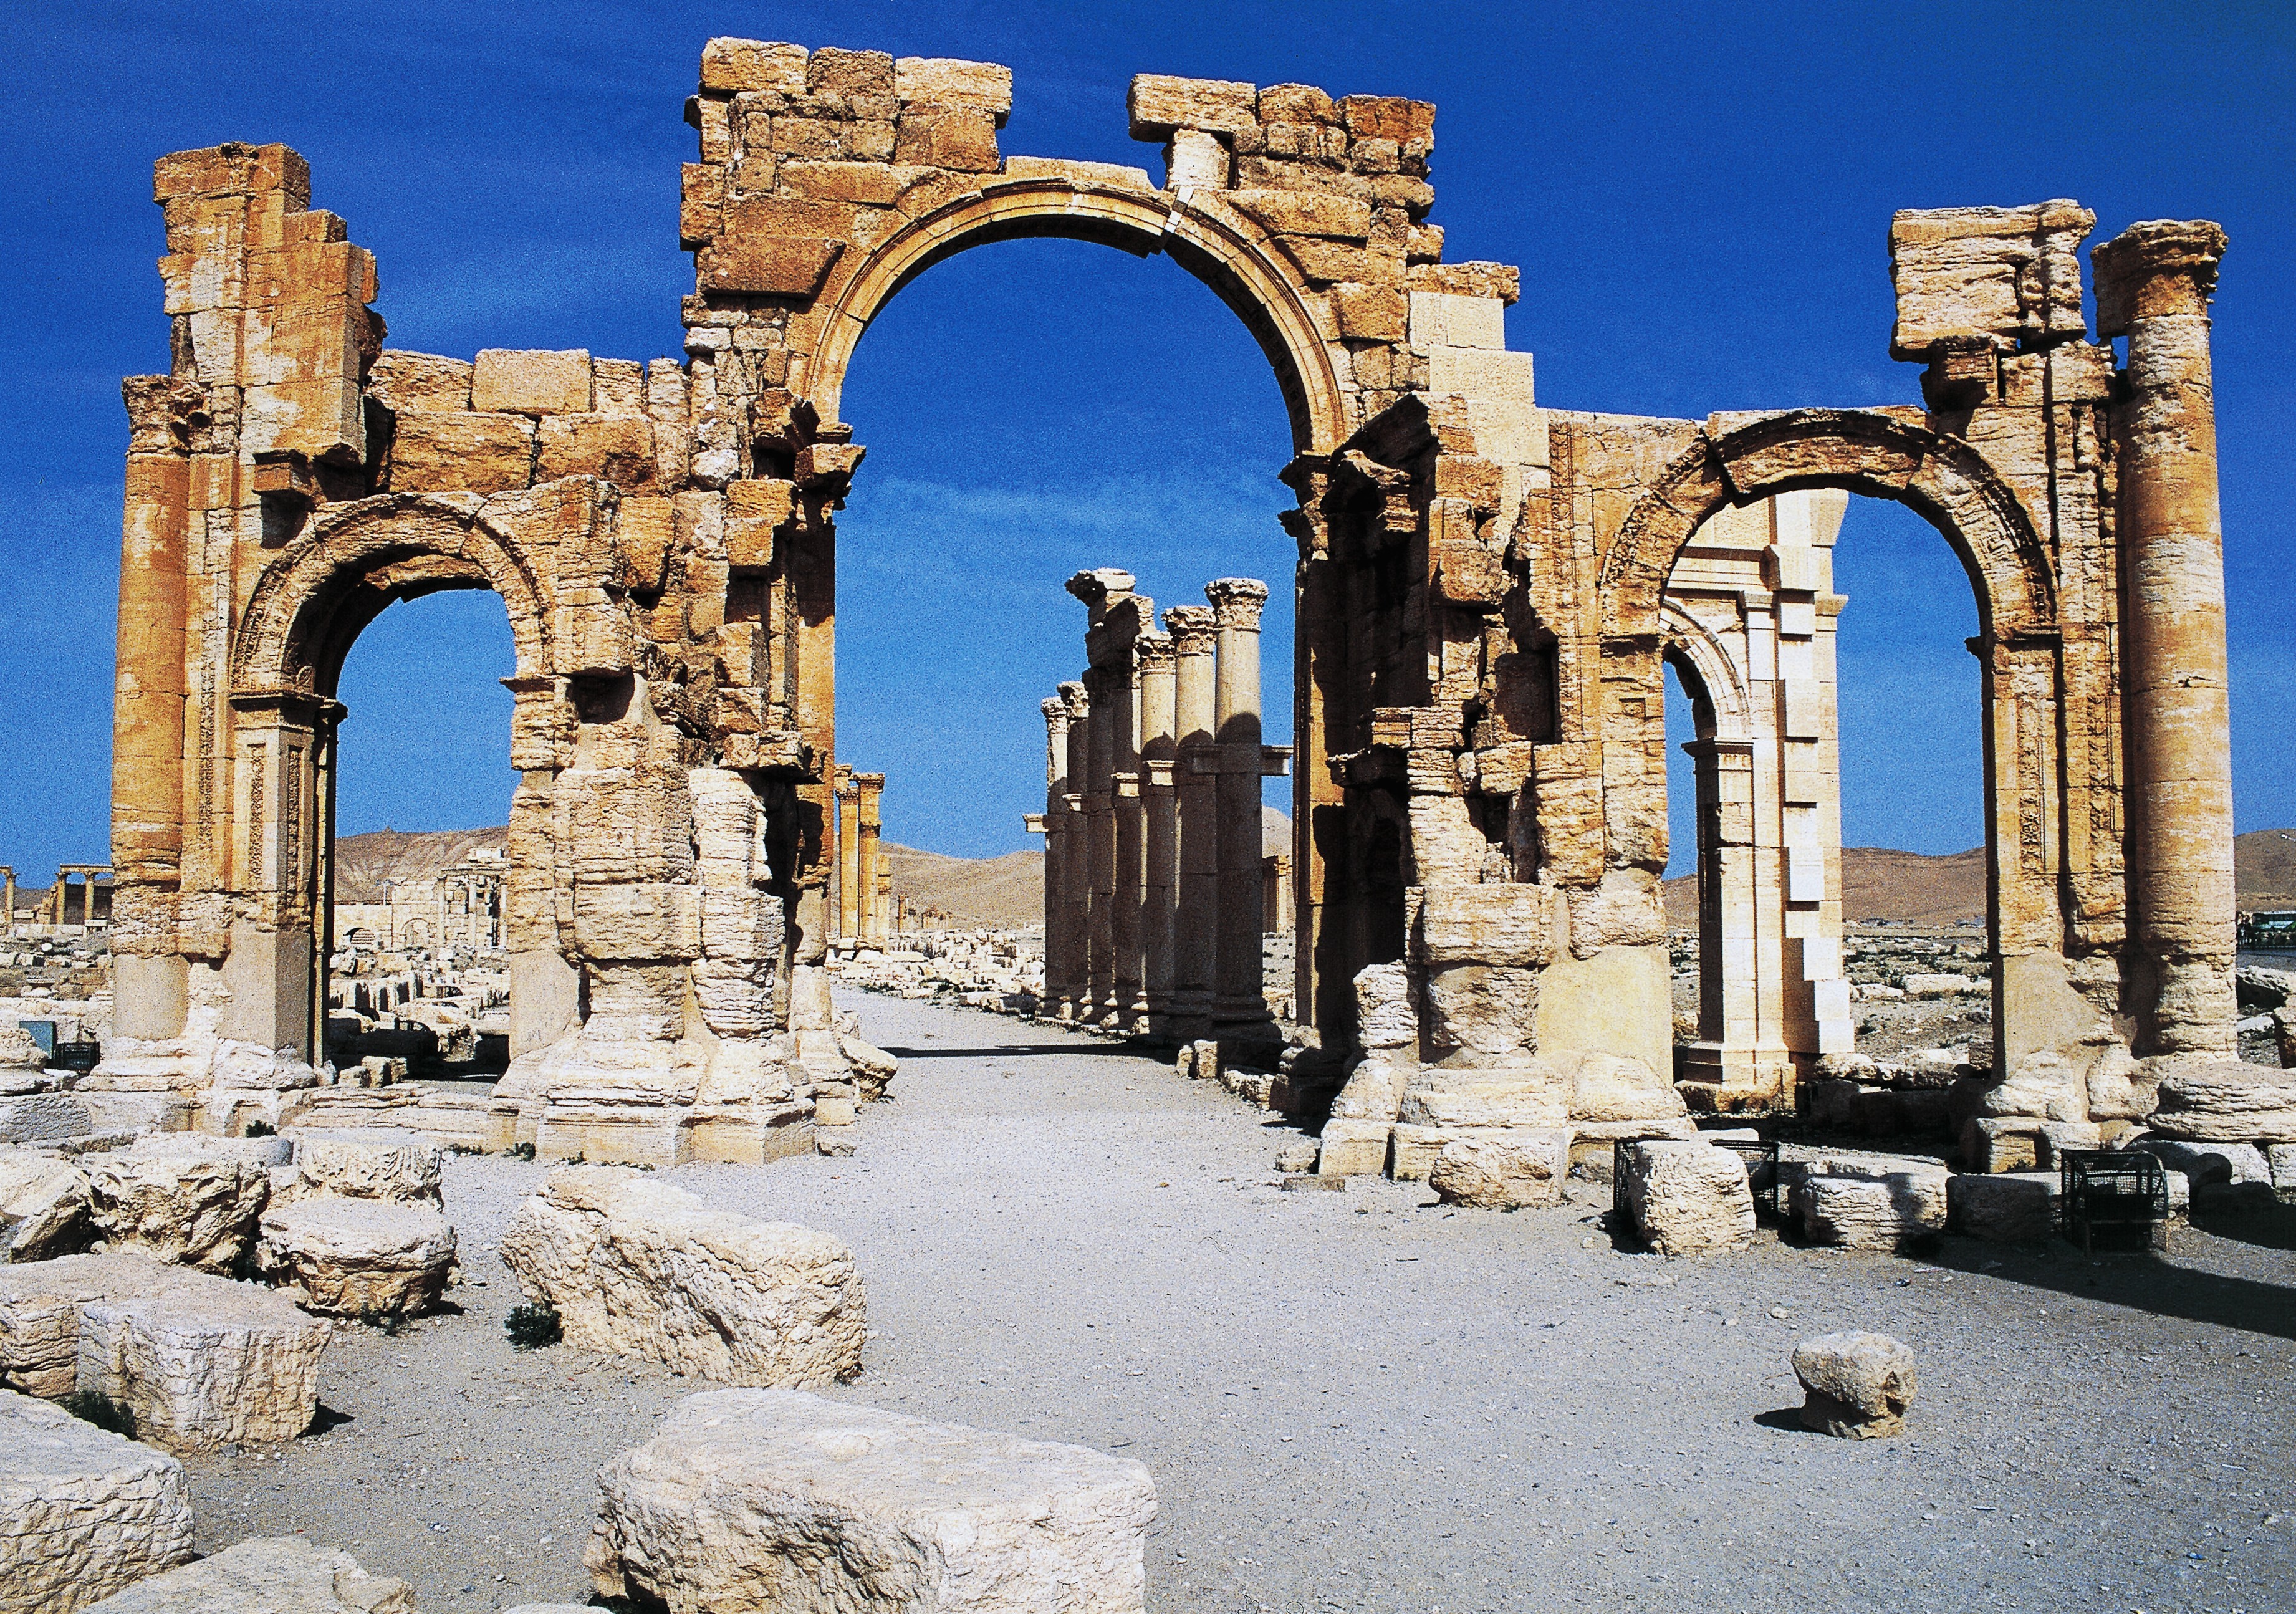 L'arco di trionfo a Palmira, in Siria.
(ANSA)